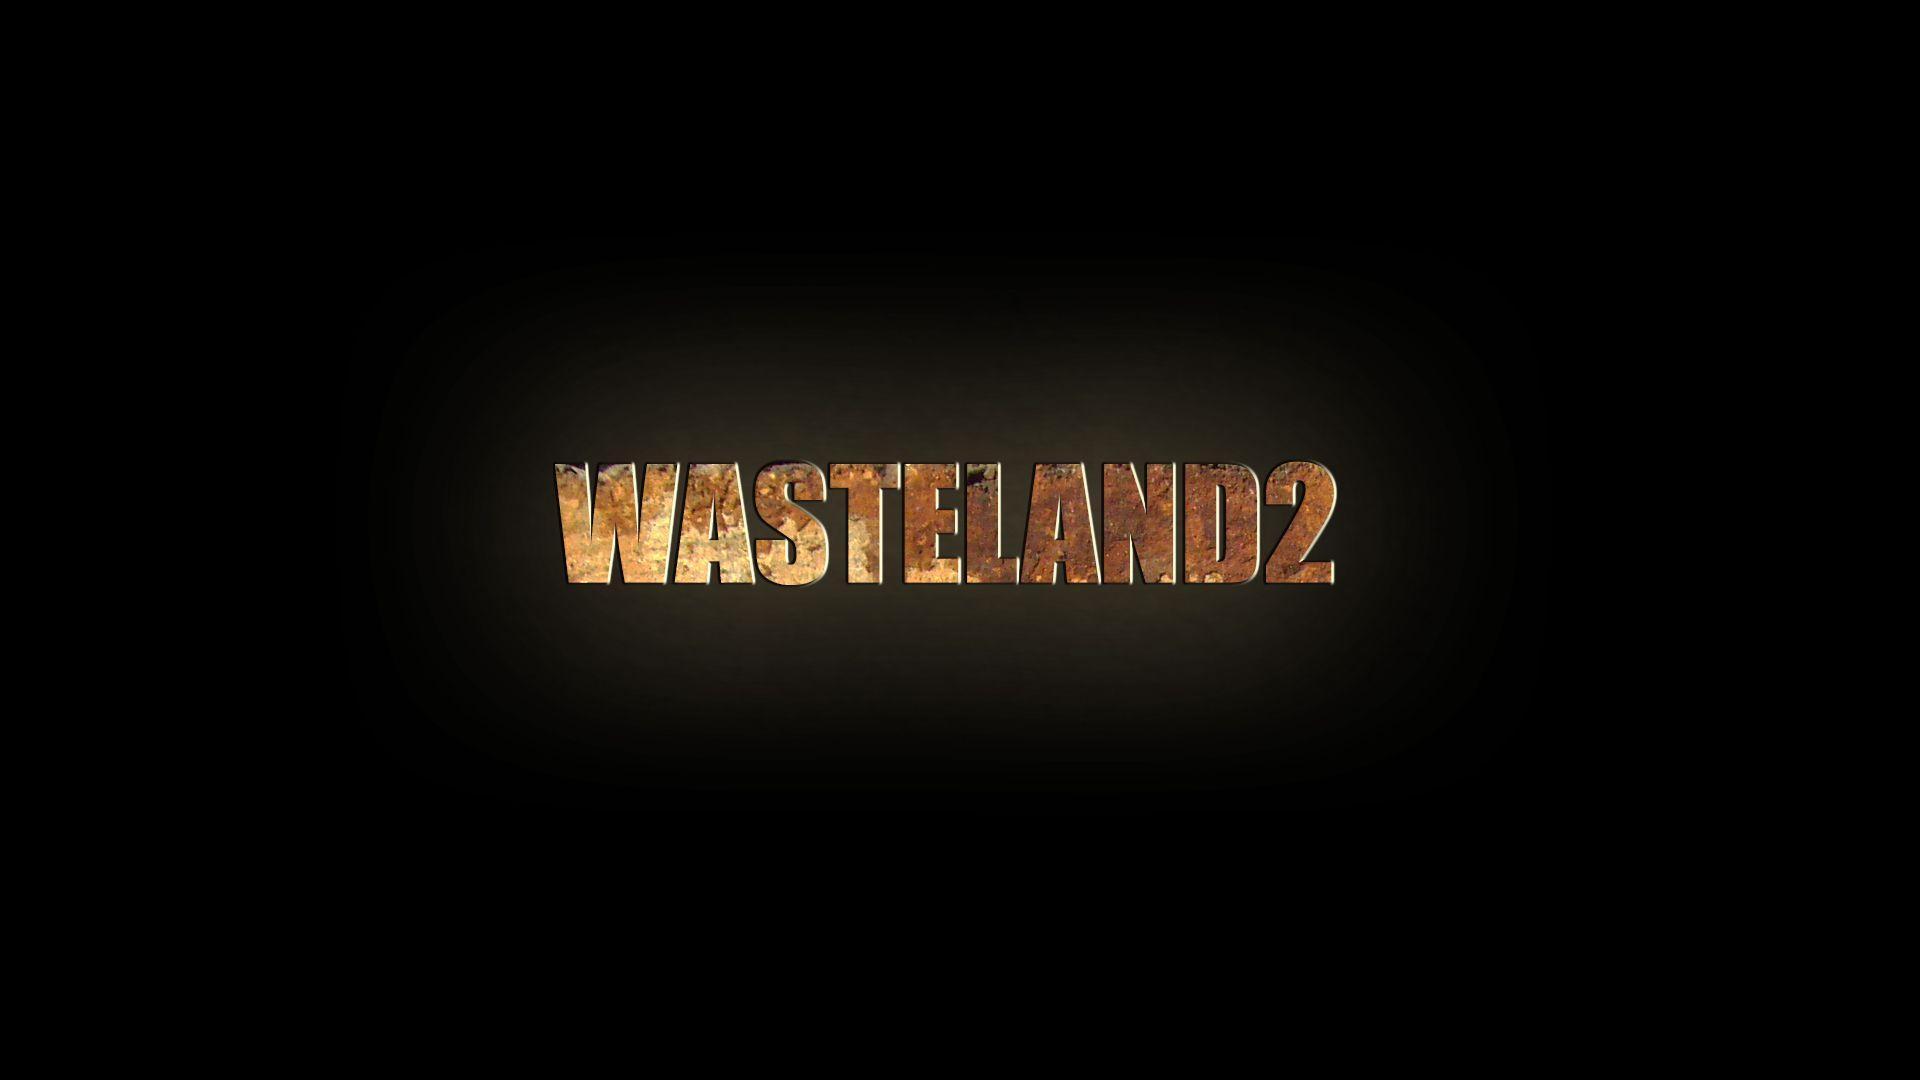 Wasteland 2 Logo Wallpaper. TanukinoSippo